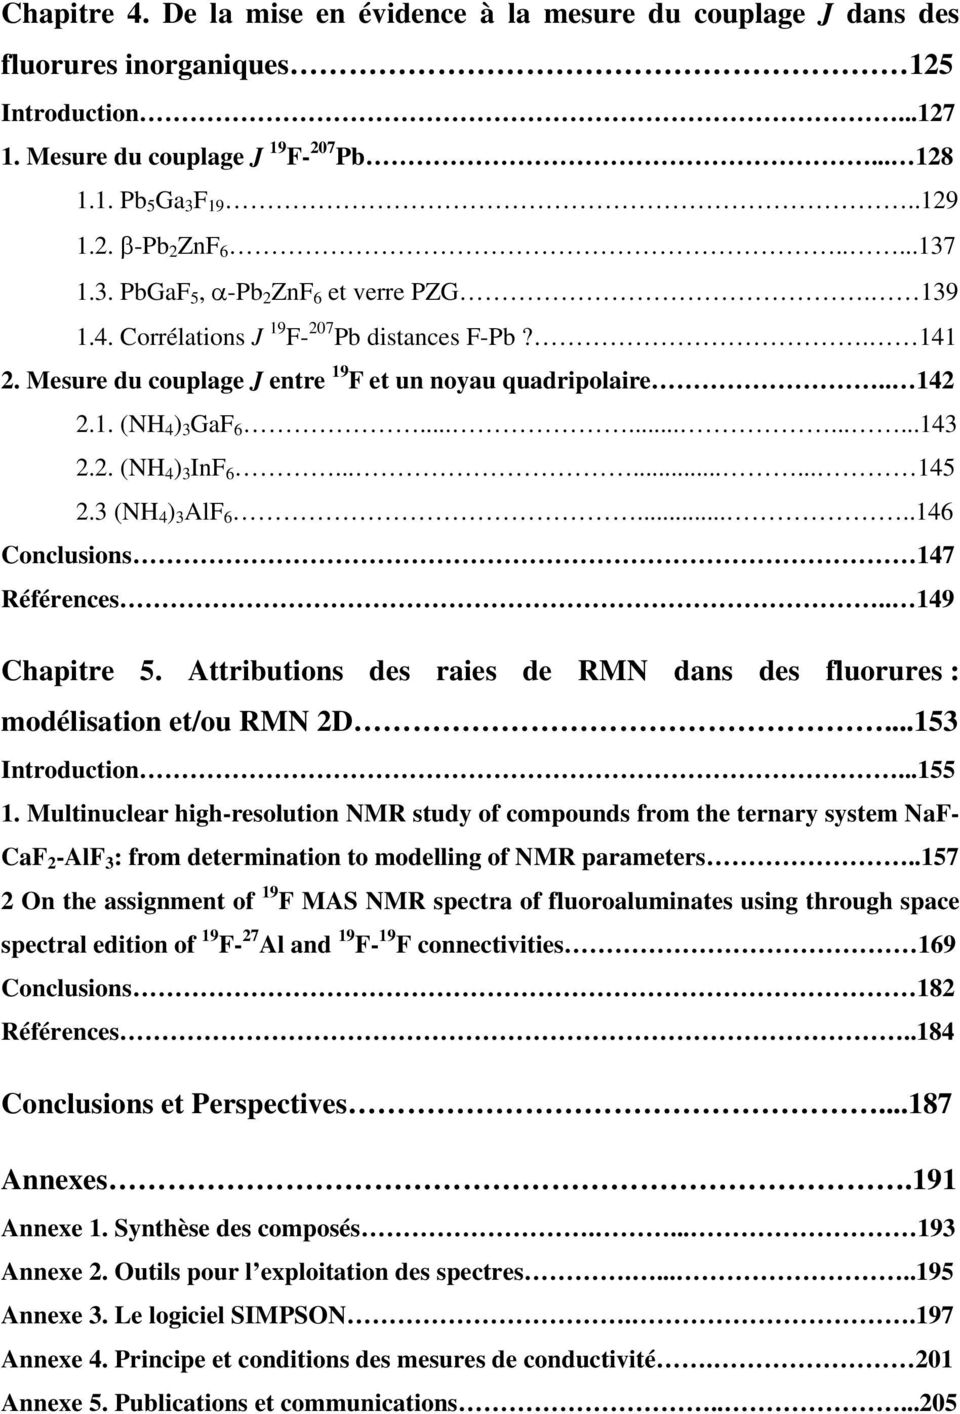 . (NH 4 ) 3 InF 6......... 145.3 (NH 4 ) 3 AlF 6.....146 Conclusions 147 Références.. 149 Chapitre 5. Attributions des raies de RMN dans des fluorures : modélisation et/ou RMN D...153 Introduction.